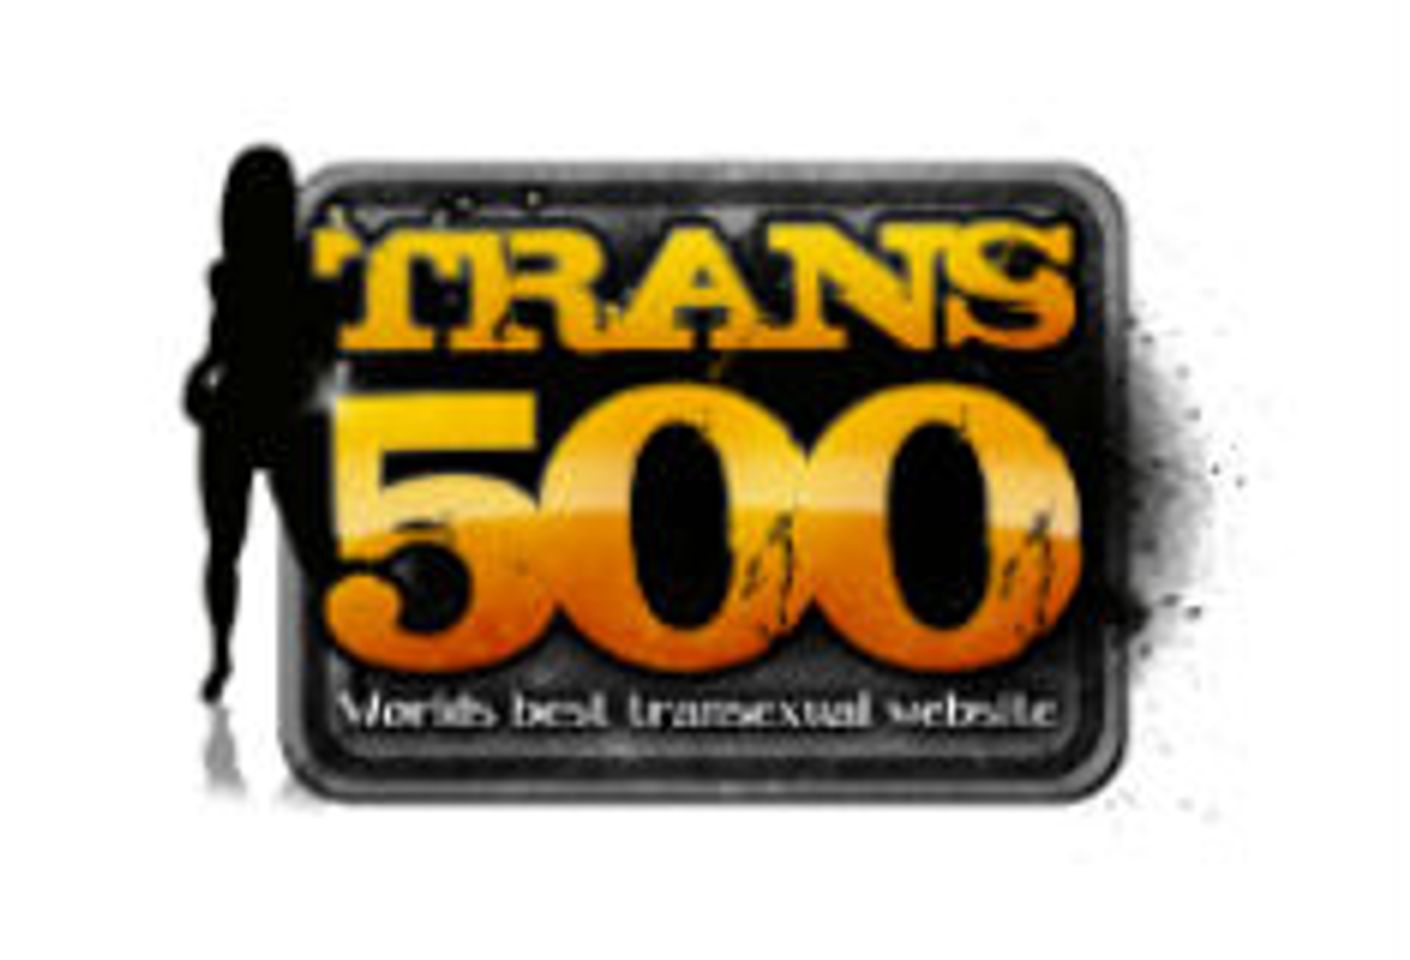 Trans 500 Streets 'I Kill It TS 10' Tomorrow